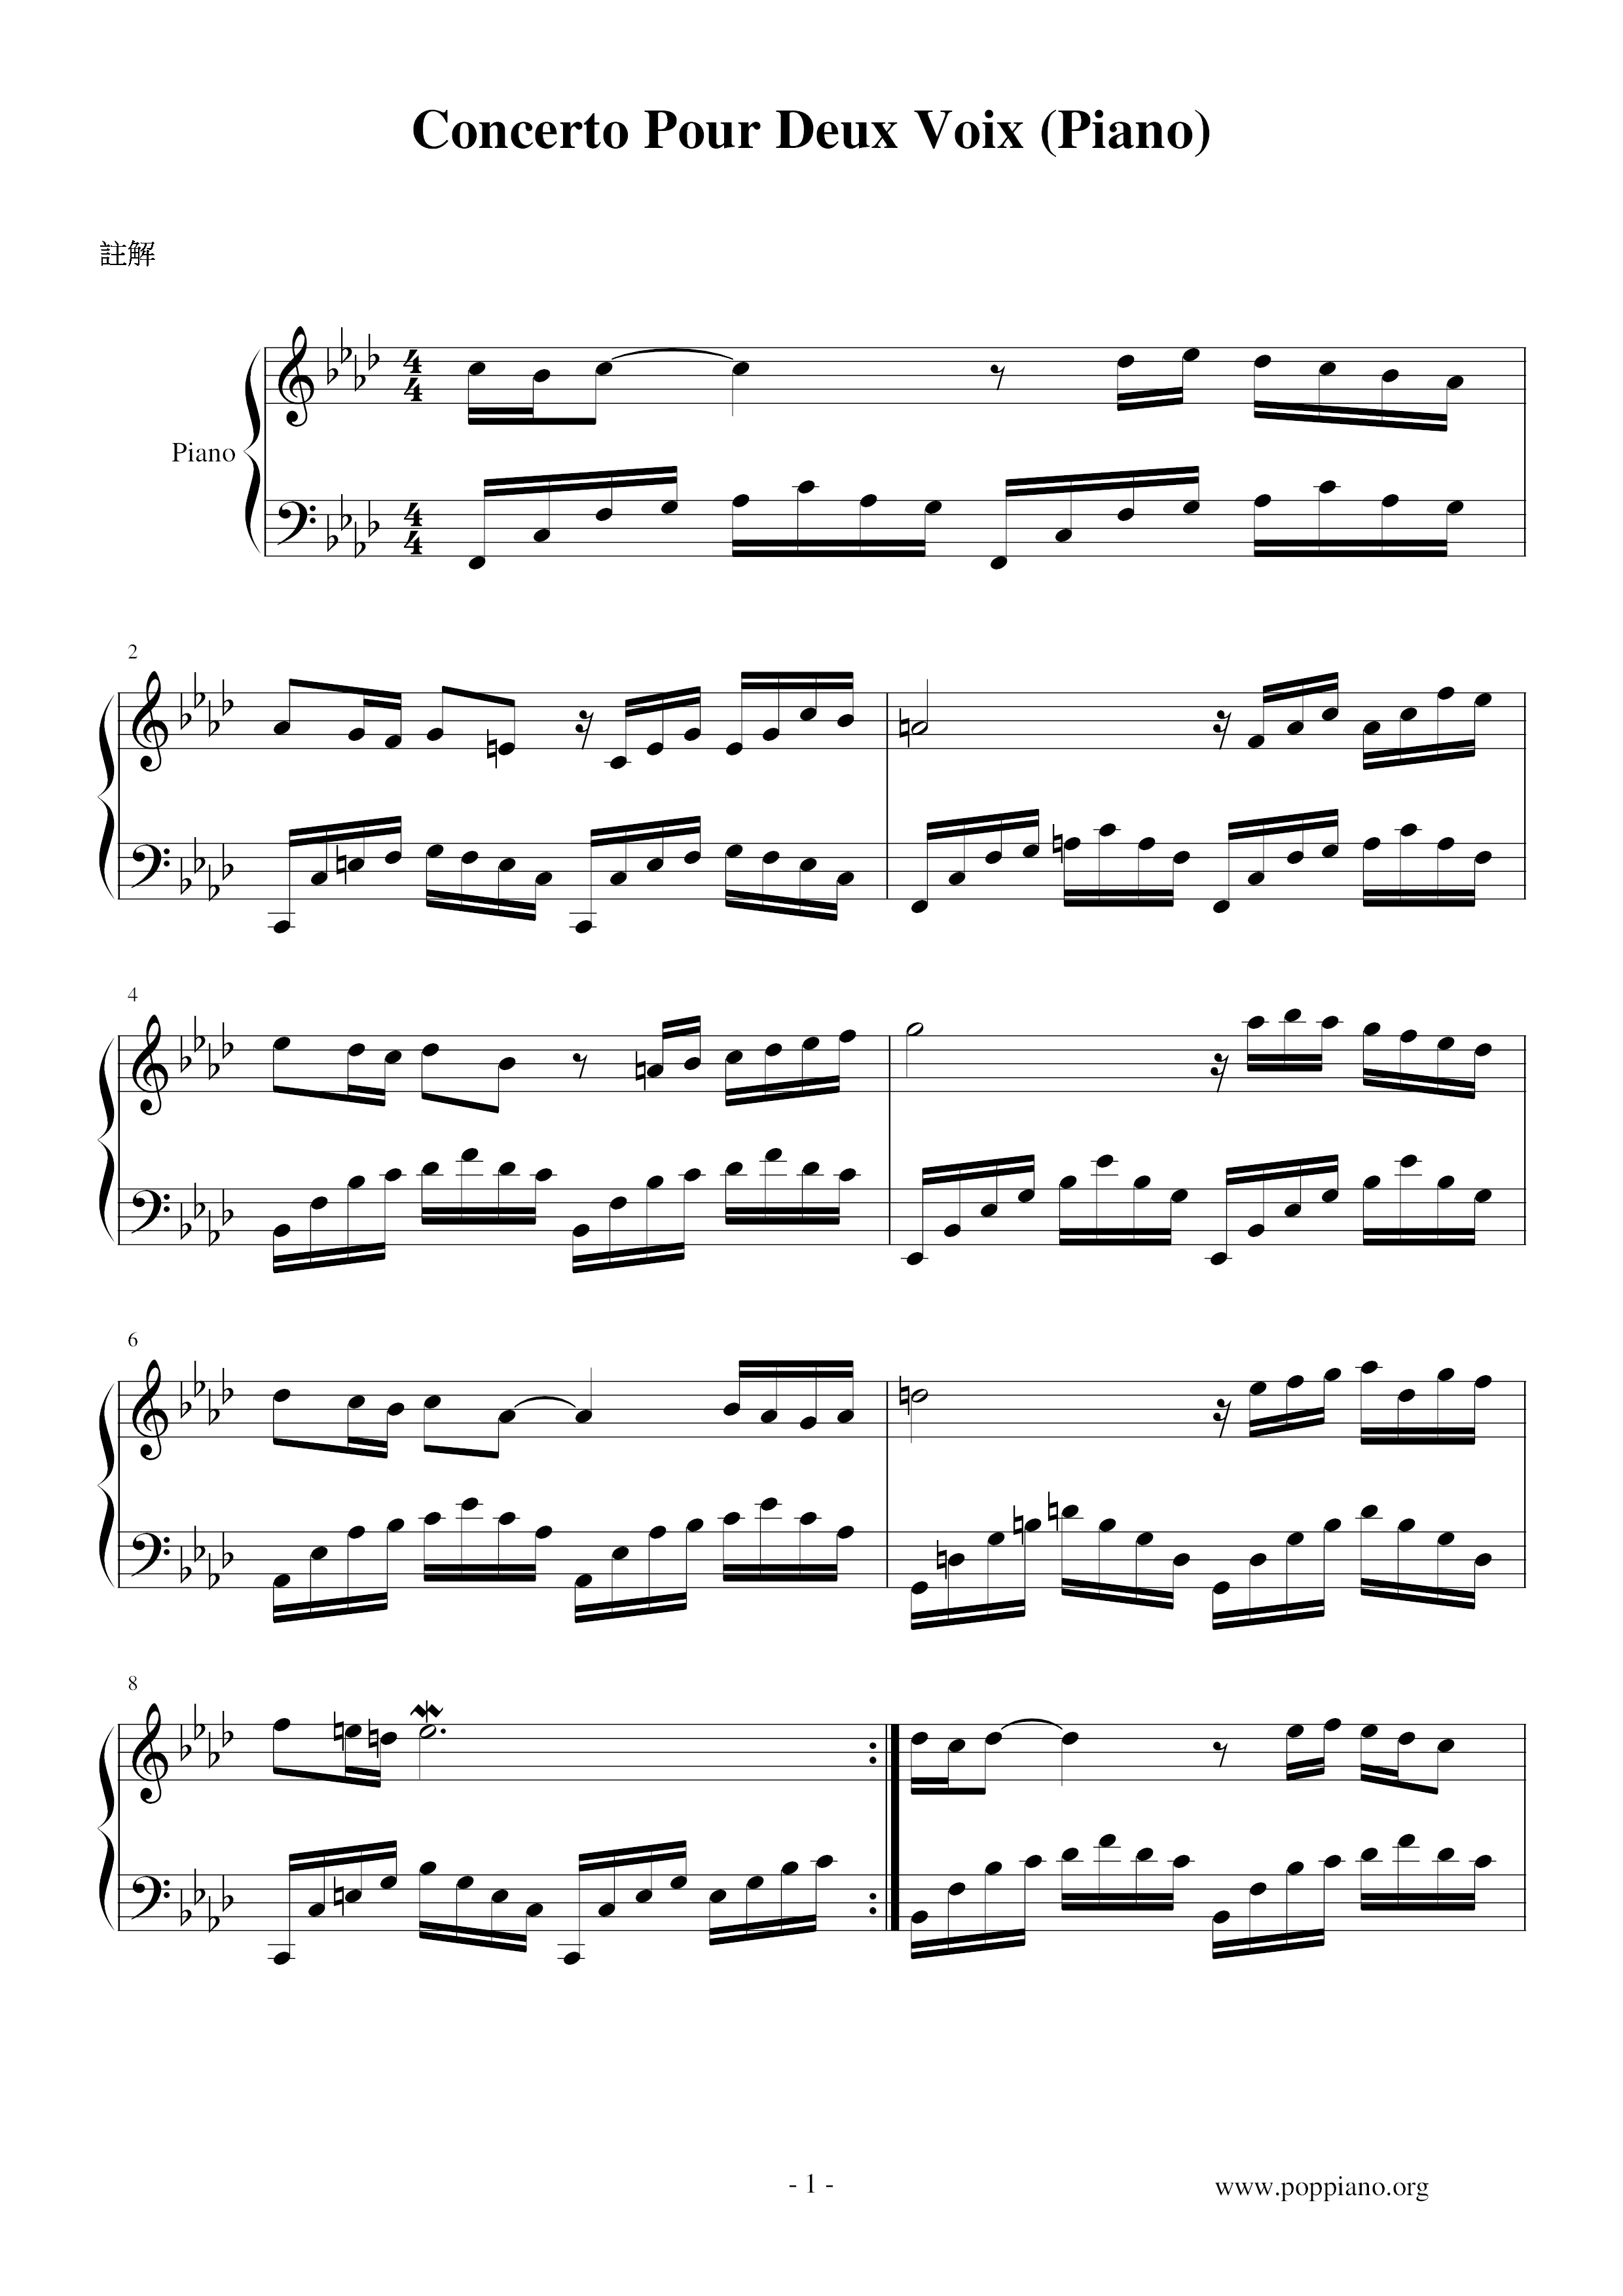 Concerto Pour Deux Voix (Piano) Score